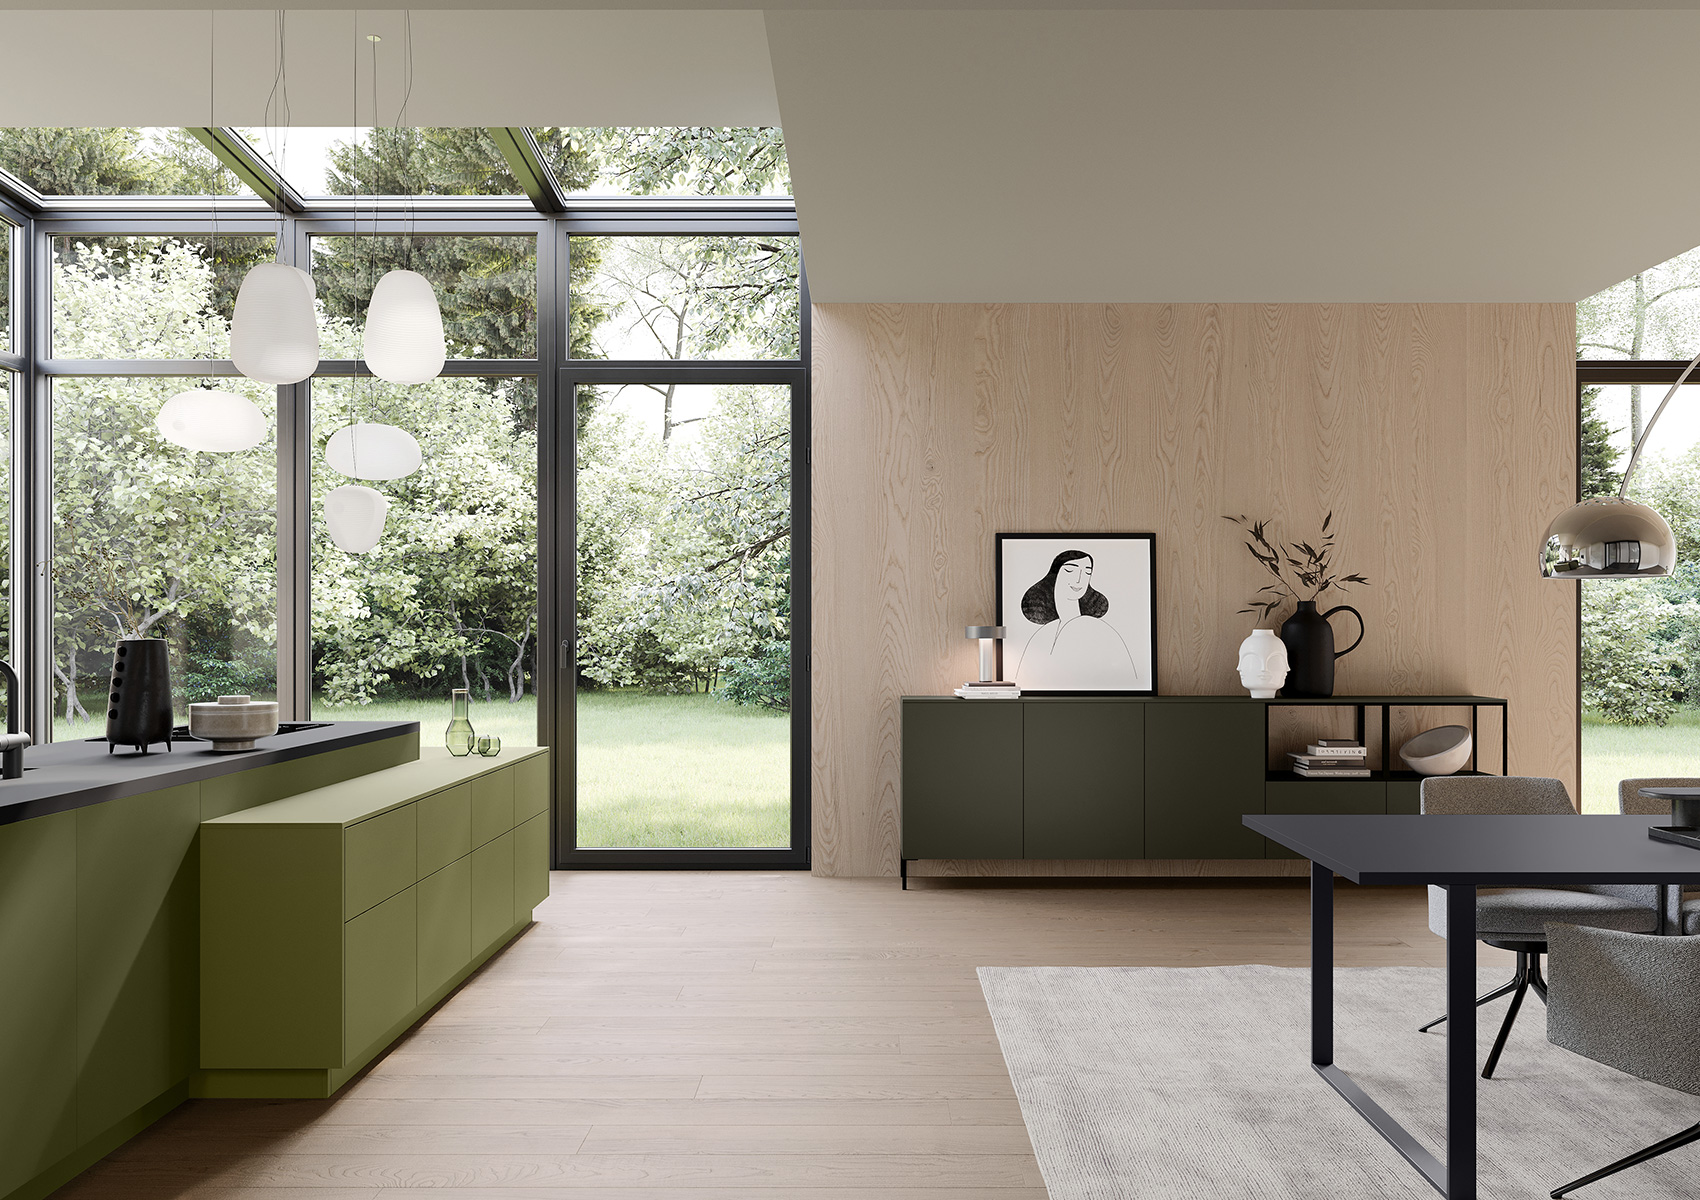 El aparador en oliva gris y su estantería abierta con marco de metal forman una conexión visual con el bloque en verde oliva de la cocina